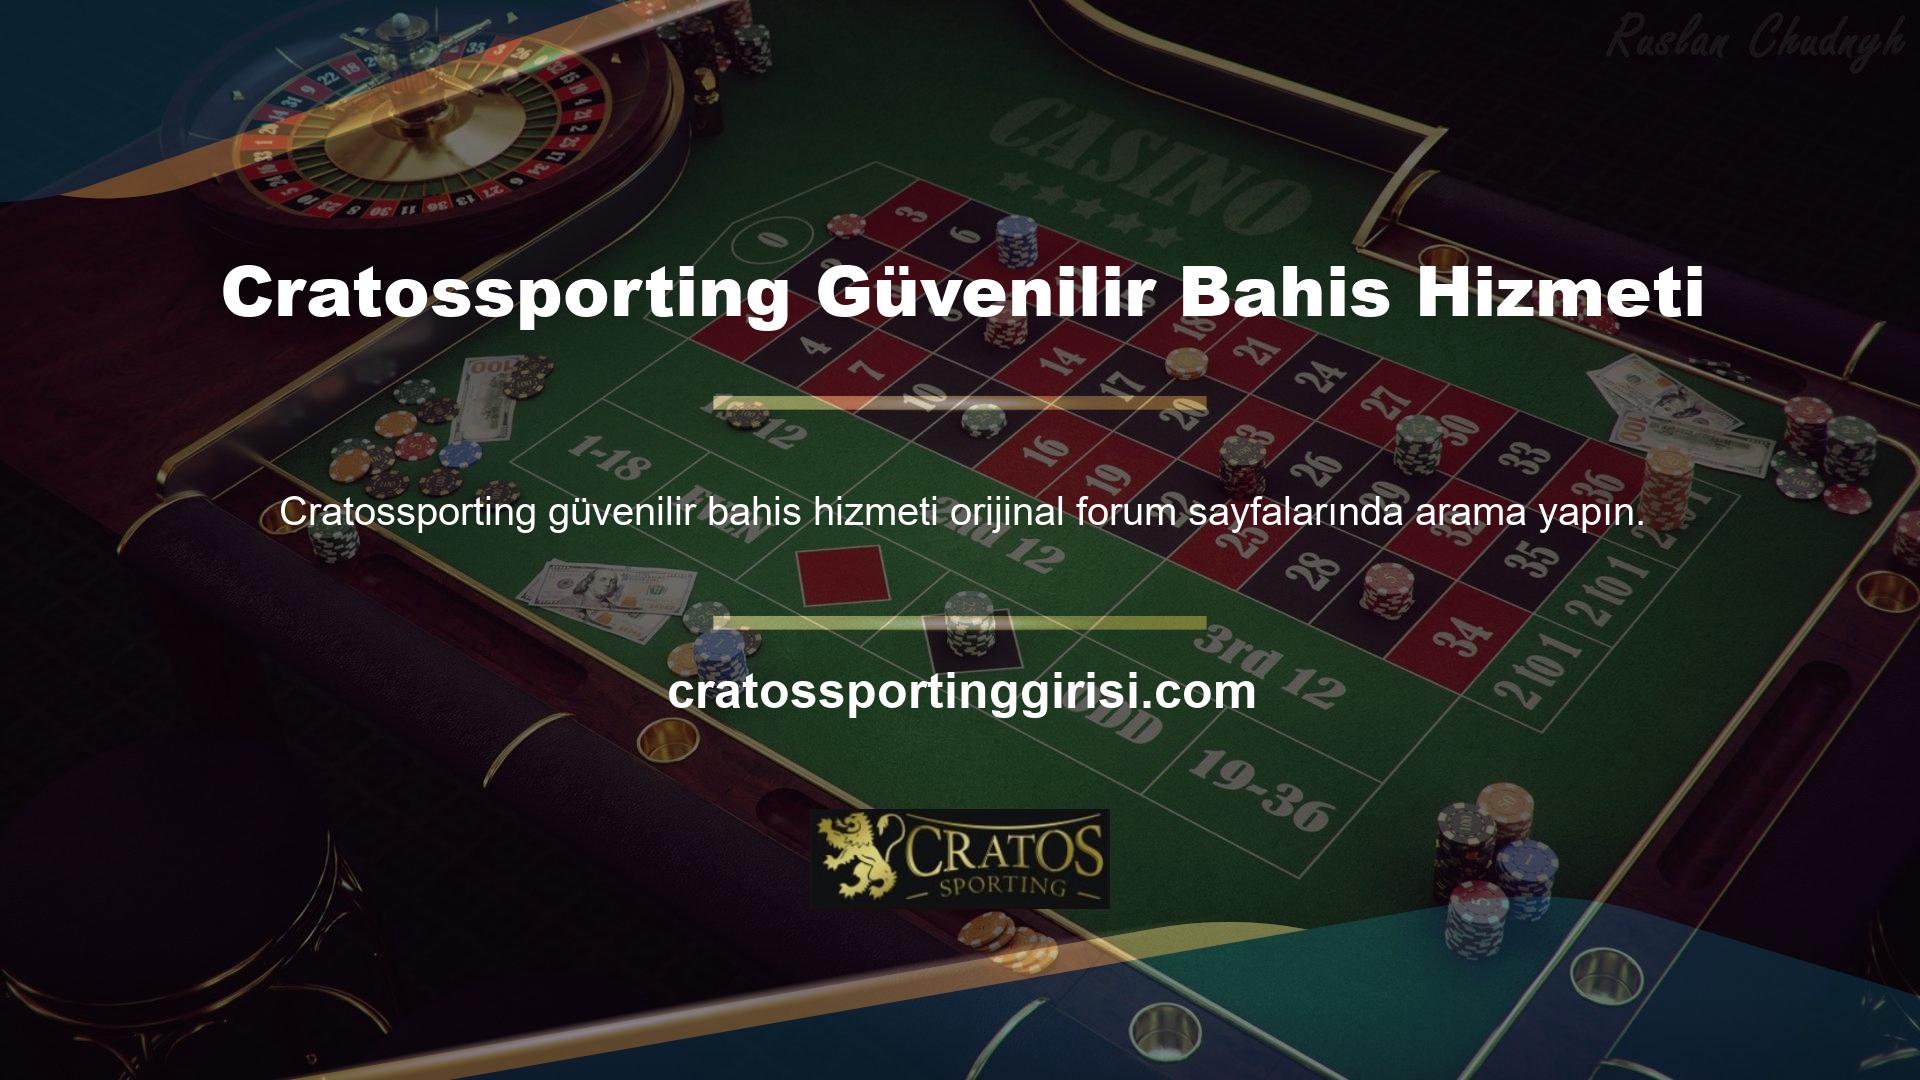 Bahis sektörünün çok ünlü oyuncularından Cratossporting, deneyimli ve bilgili kadrosuyla her gün Türk kullanıcılara hizmet vermeye devam ediyor